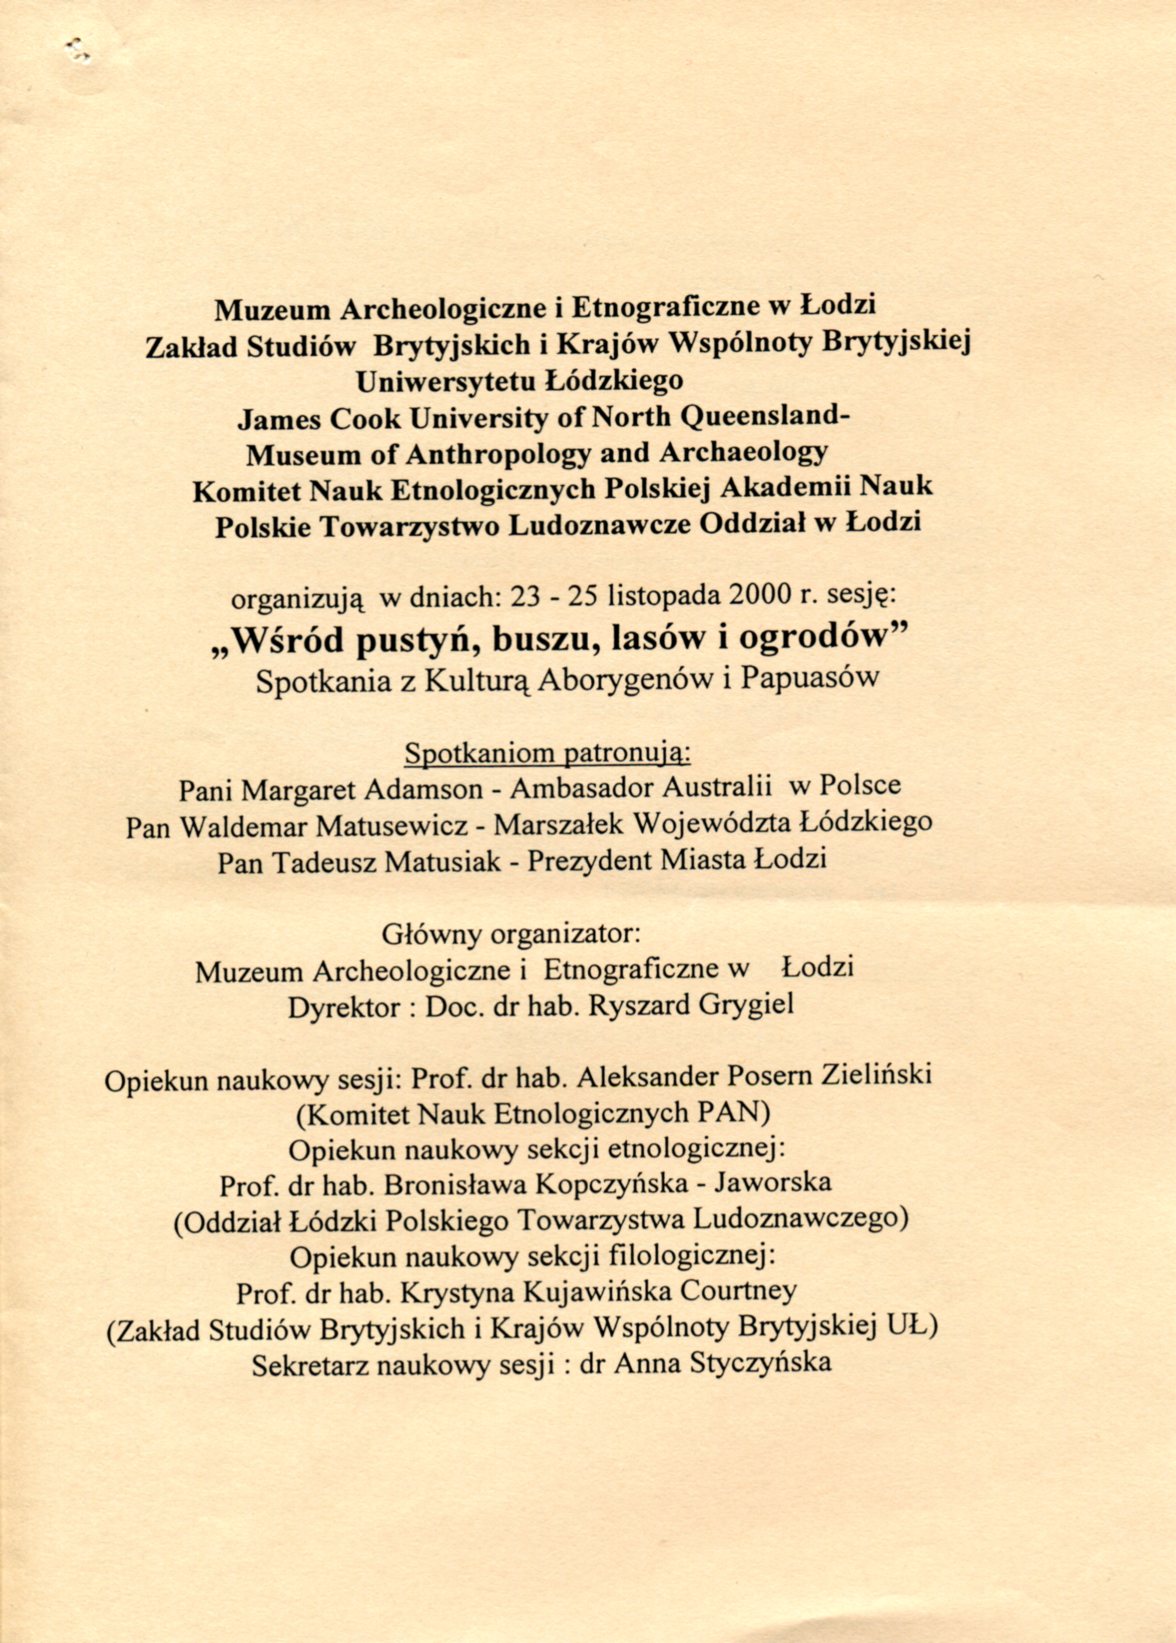 konferencja-2000-Lodz-program-001